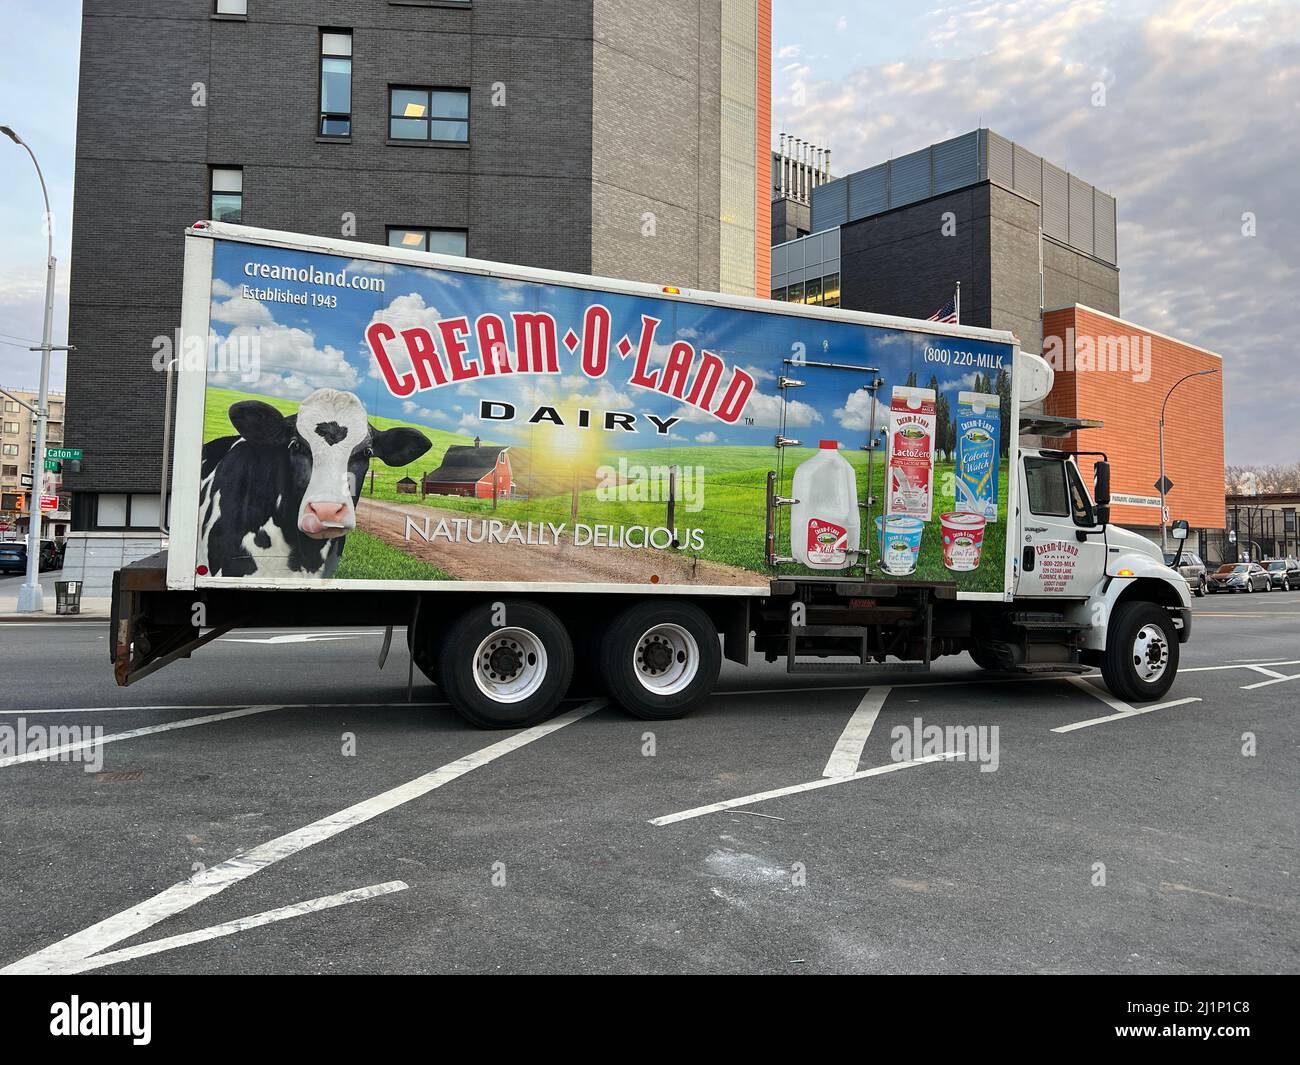 Ein sehr pastorales Gemälde auf einem Lieferwagen für Cream O Land Dairy, das auf Märkte in Brooklyn, New York, geliefert wird. Stockfoto